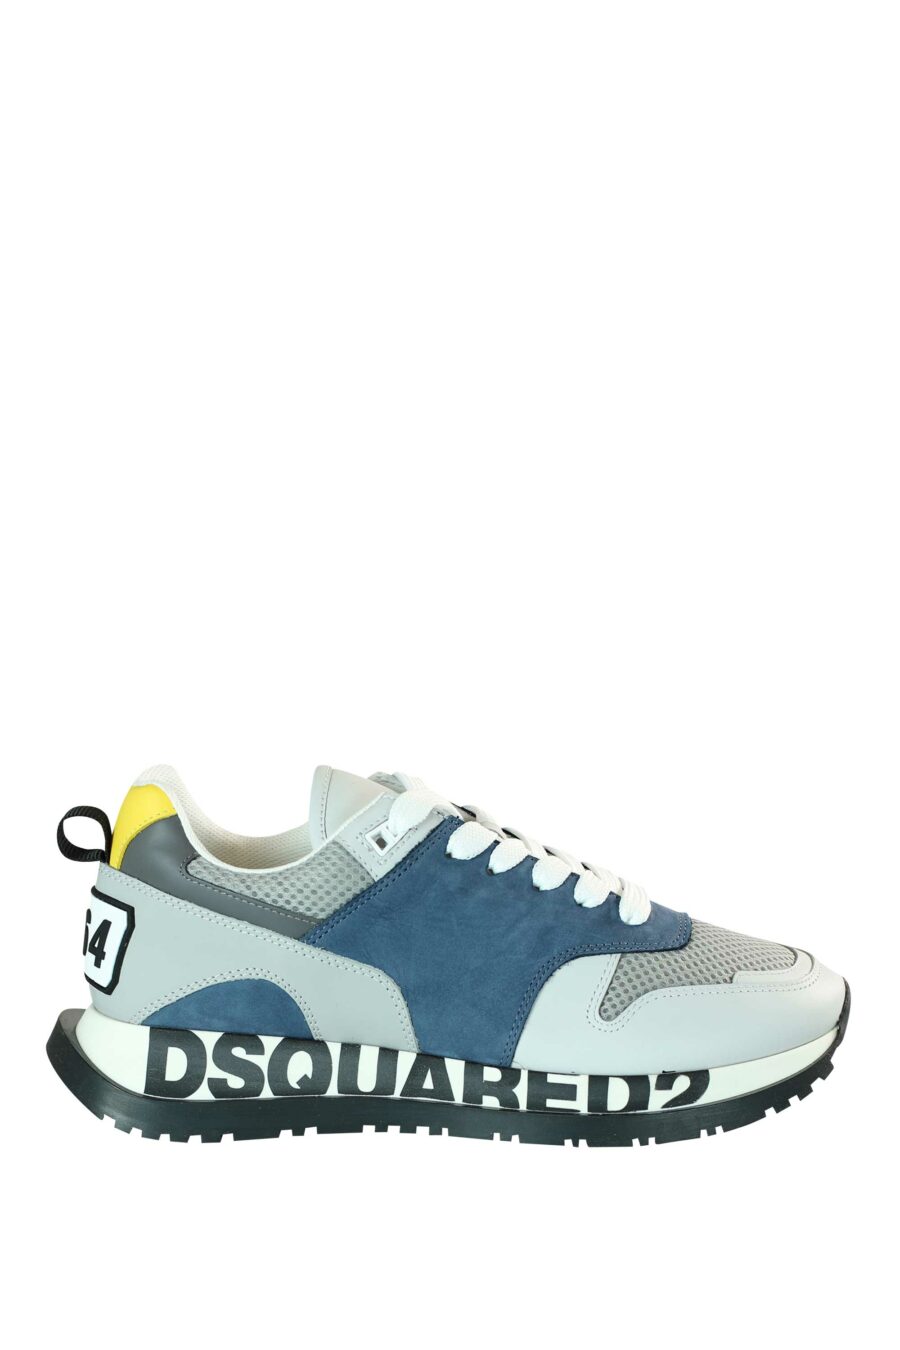 Chaussures de course multicolores bleues avec logo sur la semelle - 8055777205549